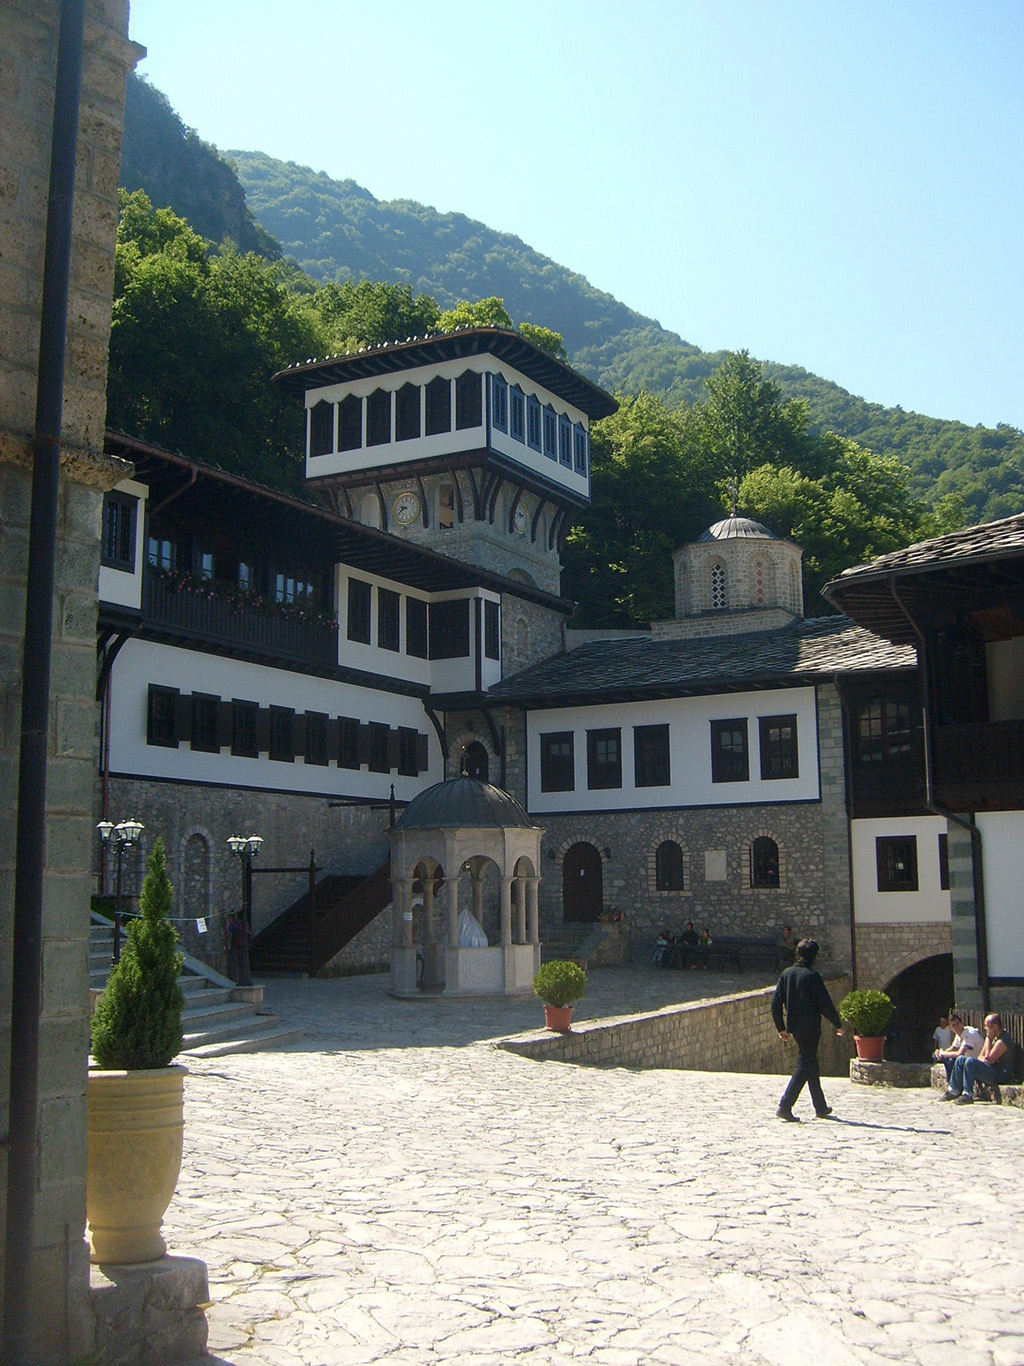 Pravoslavný klášter sv. Jana zvaný Bigorski